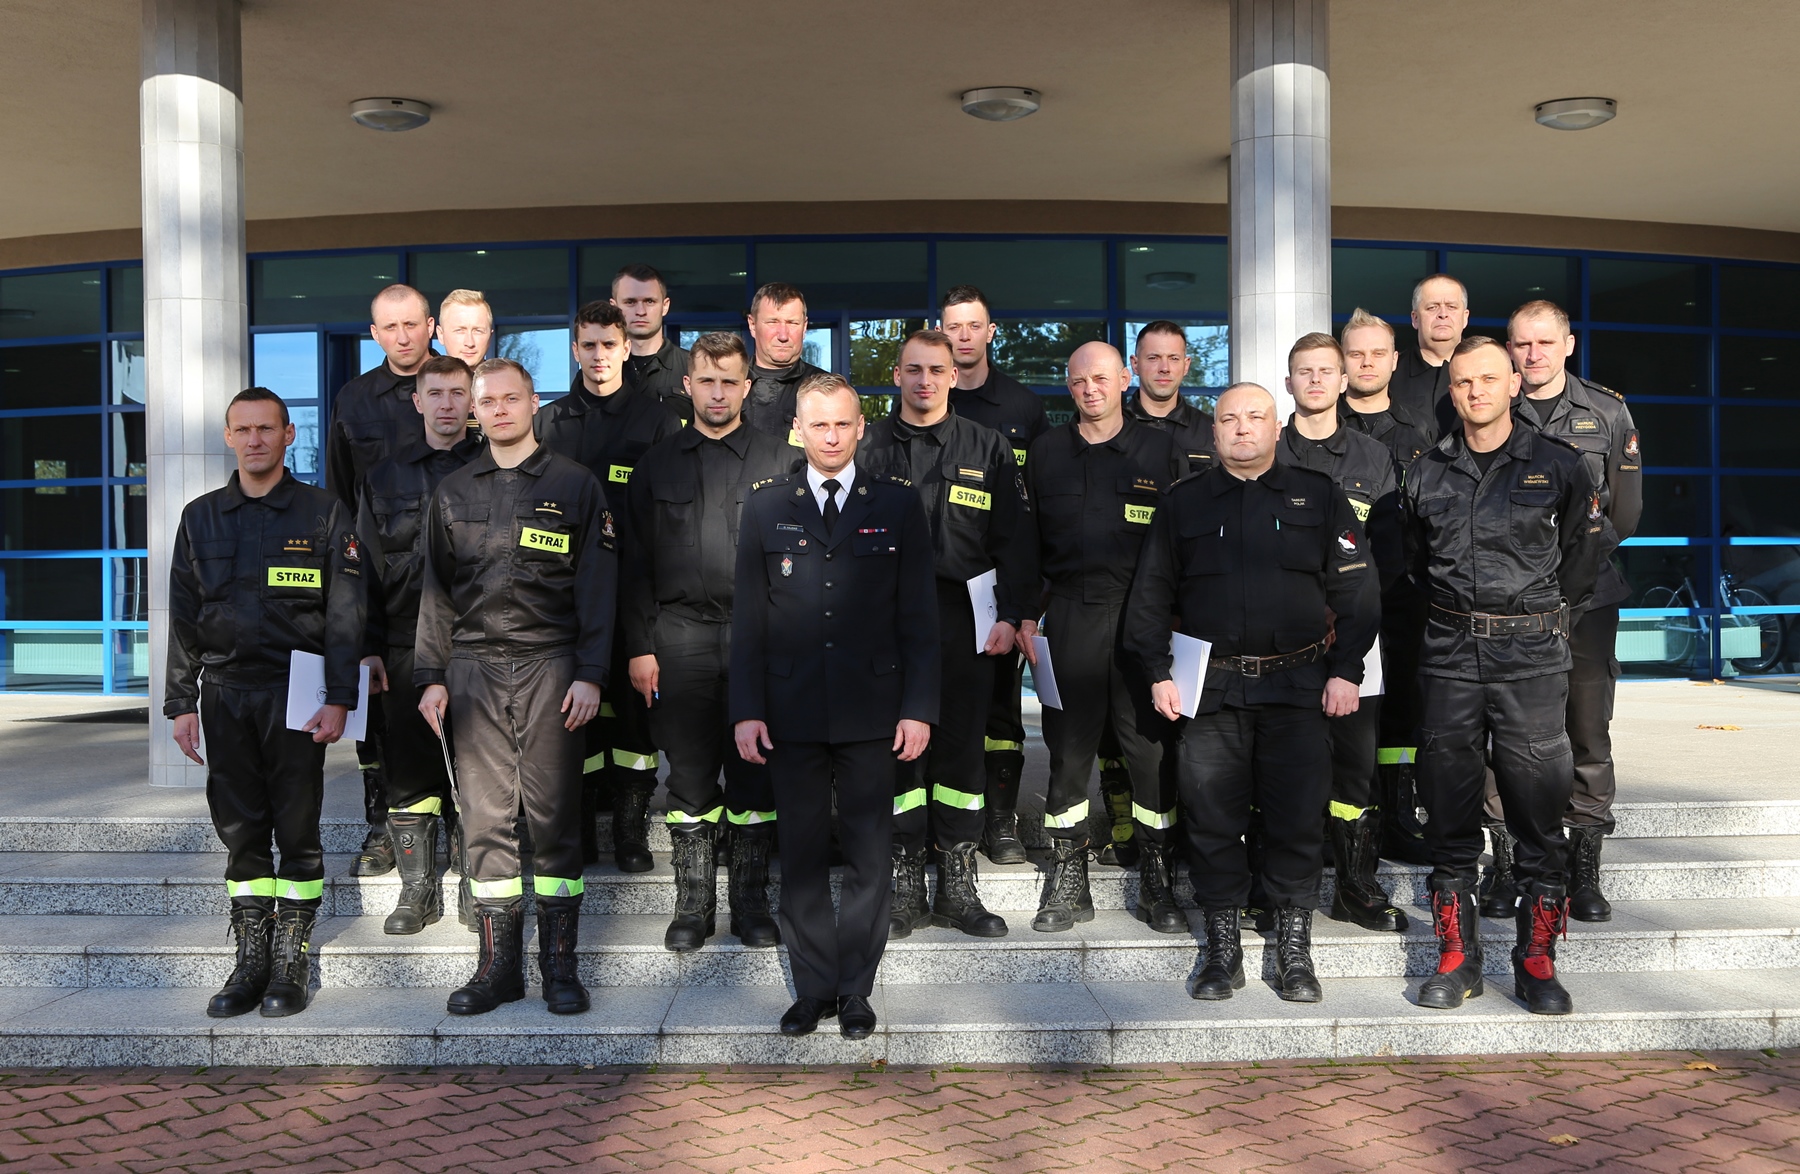 Zakończenie szkolenia pn.: "Prąd elektryczny, a zagrożenia dla strażaków"